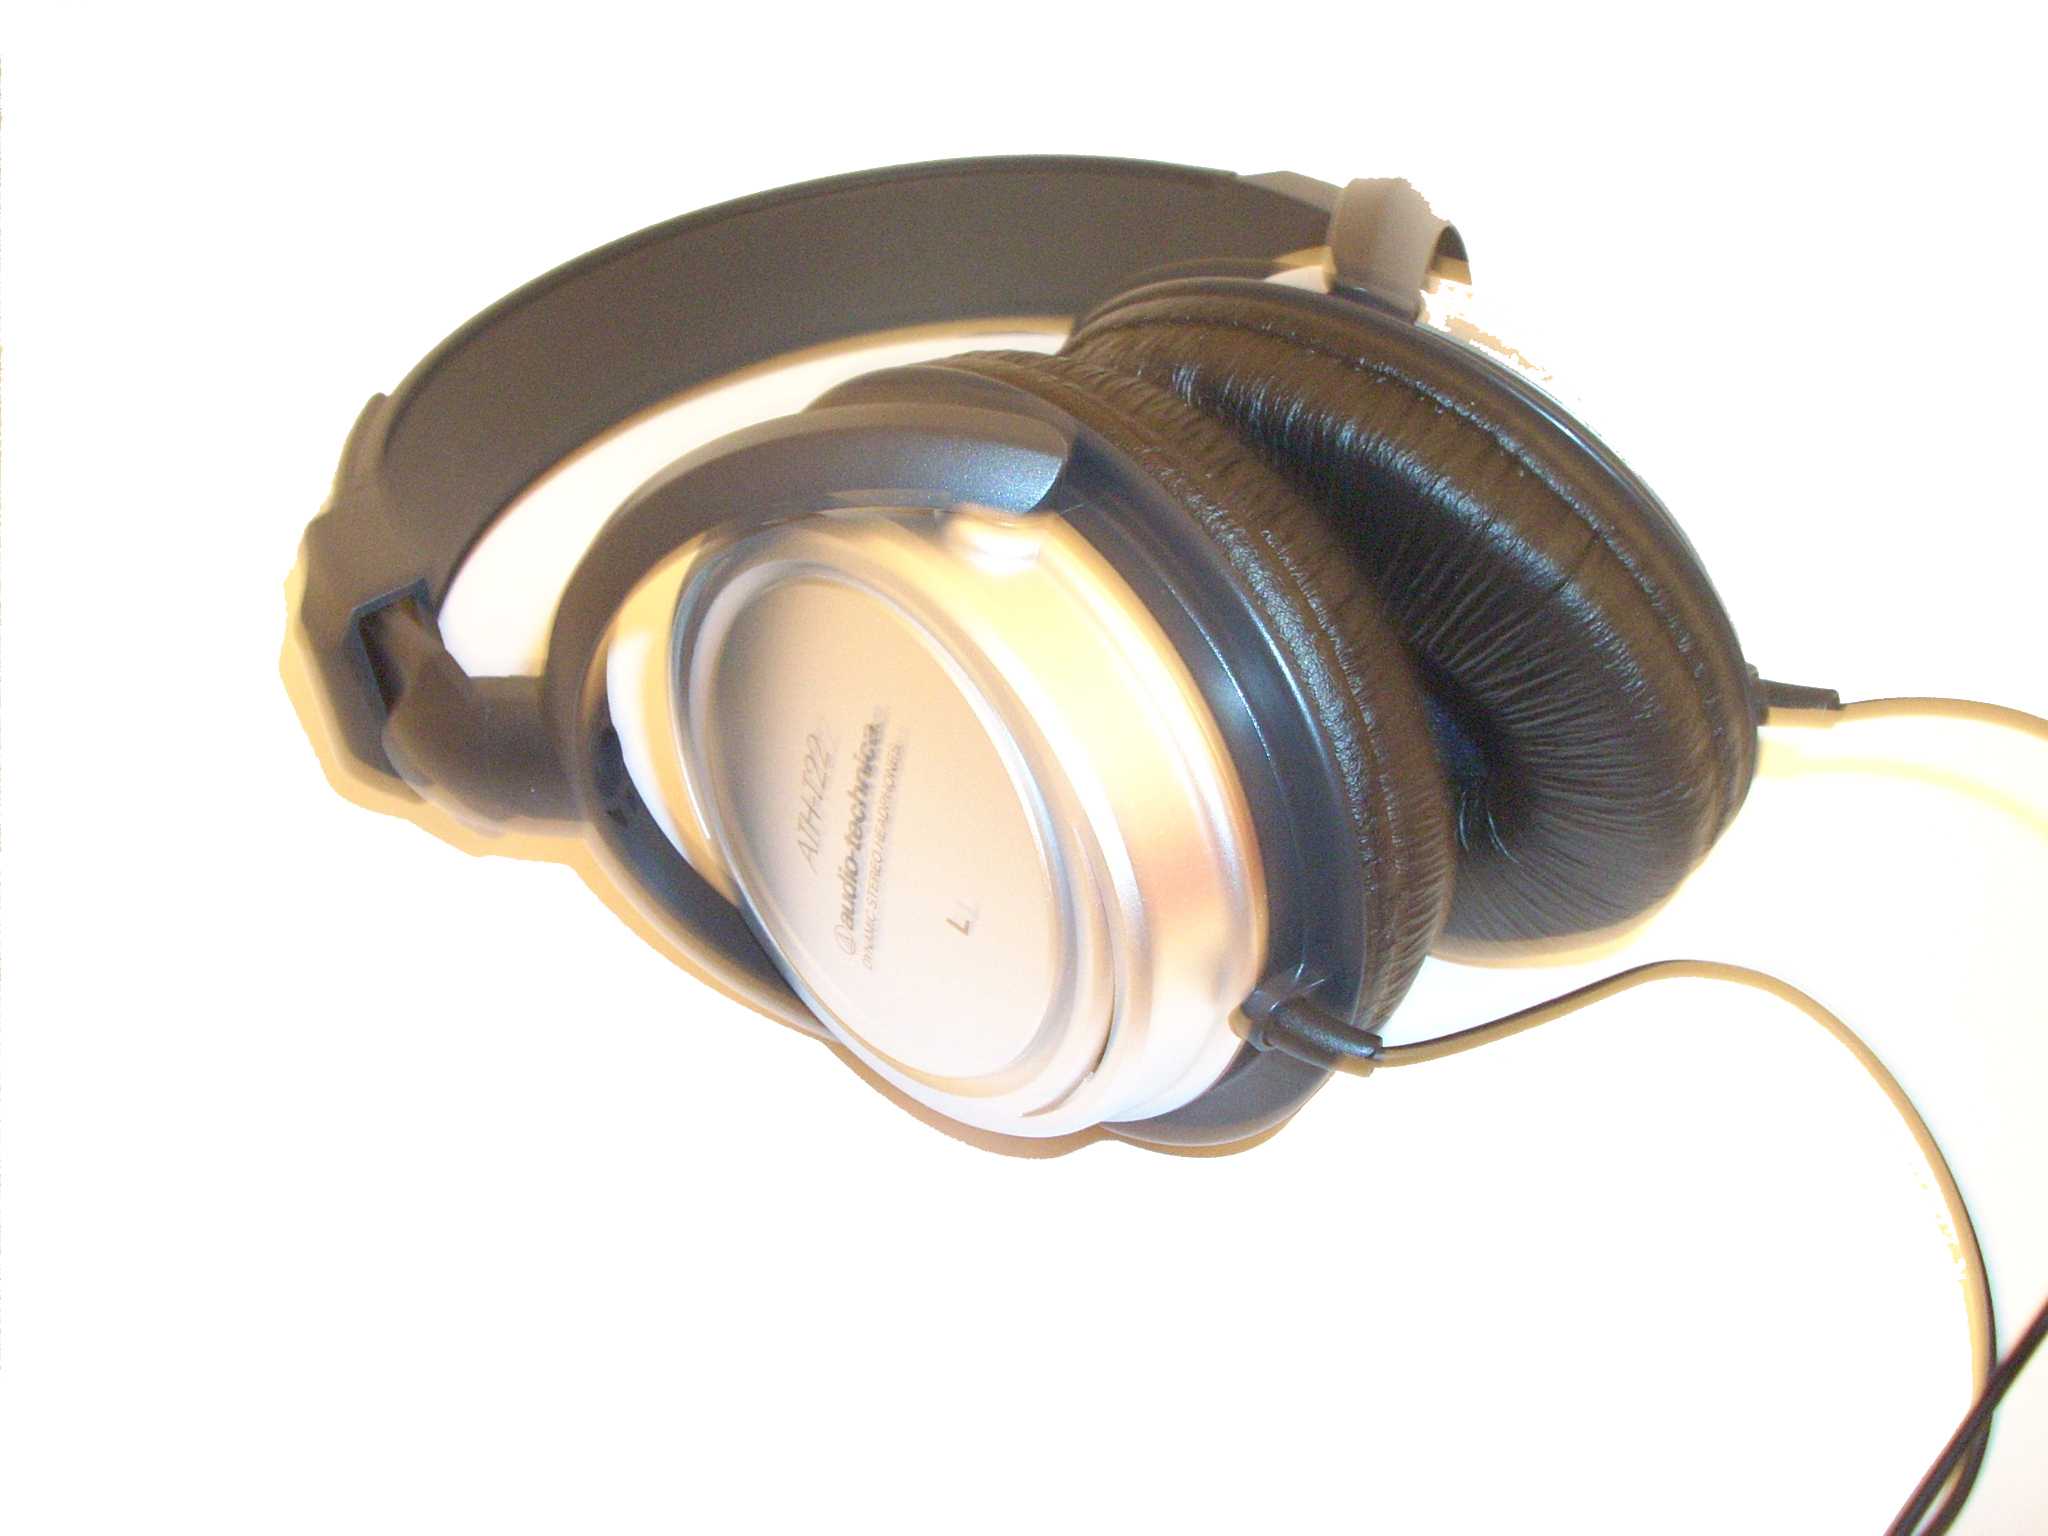 Audio-technica ath-ckf505